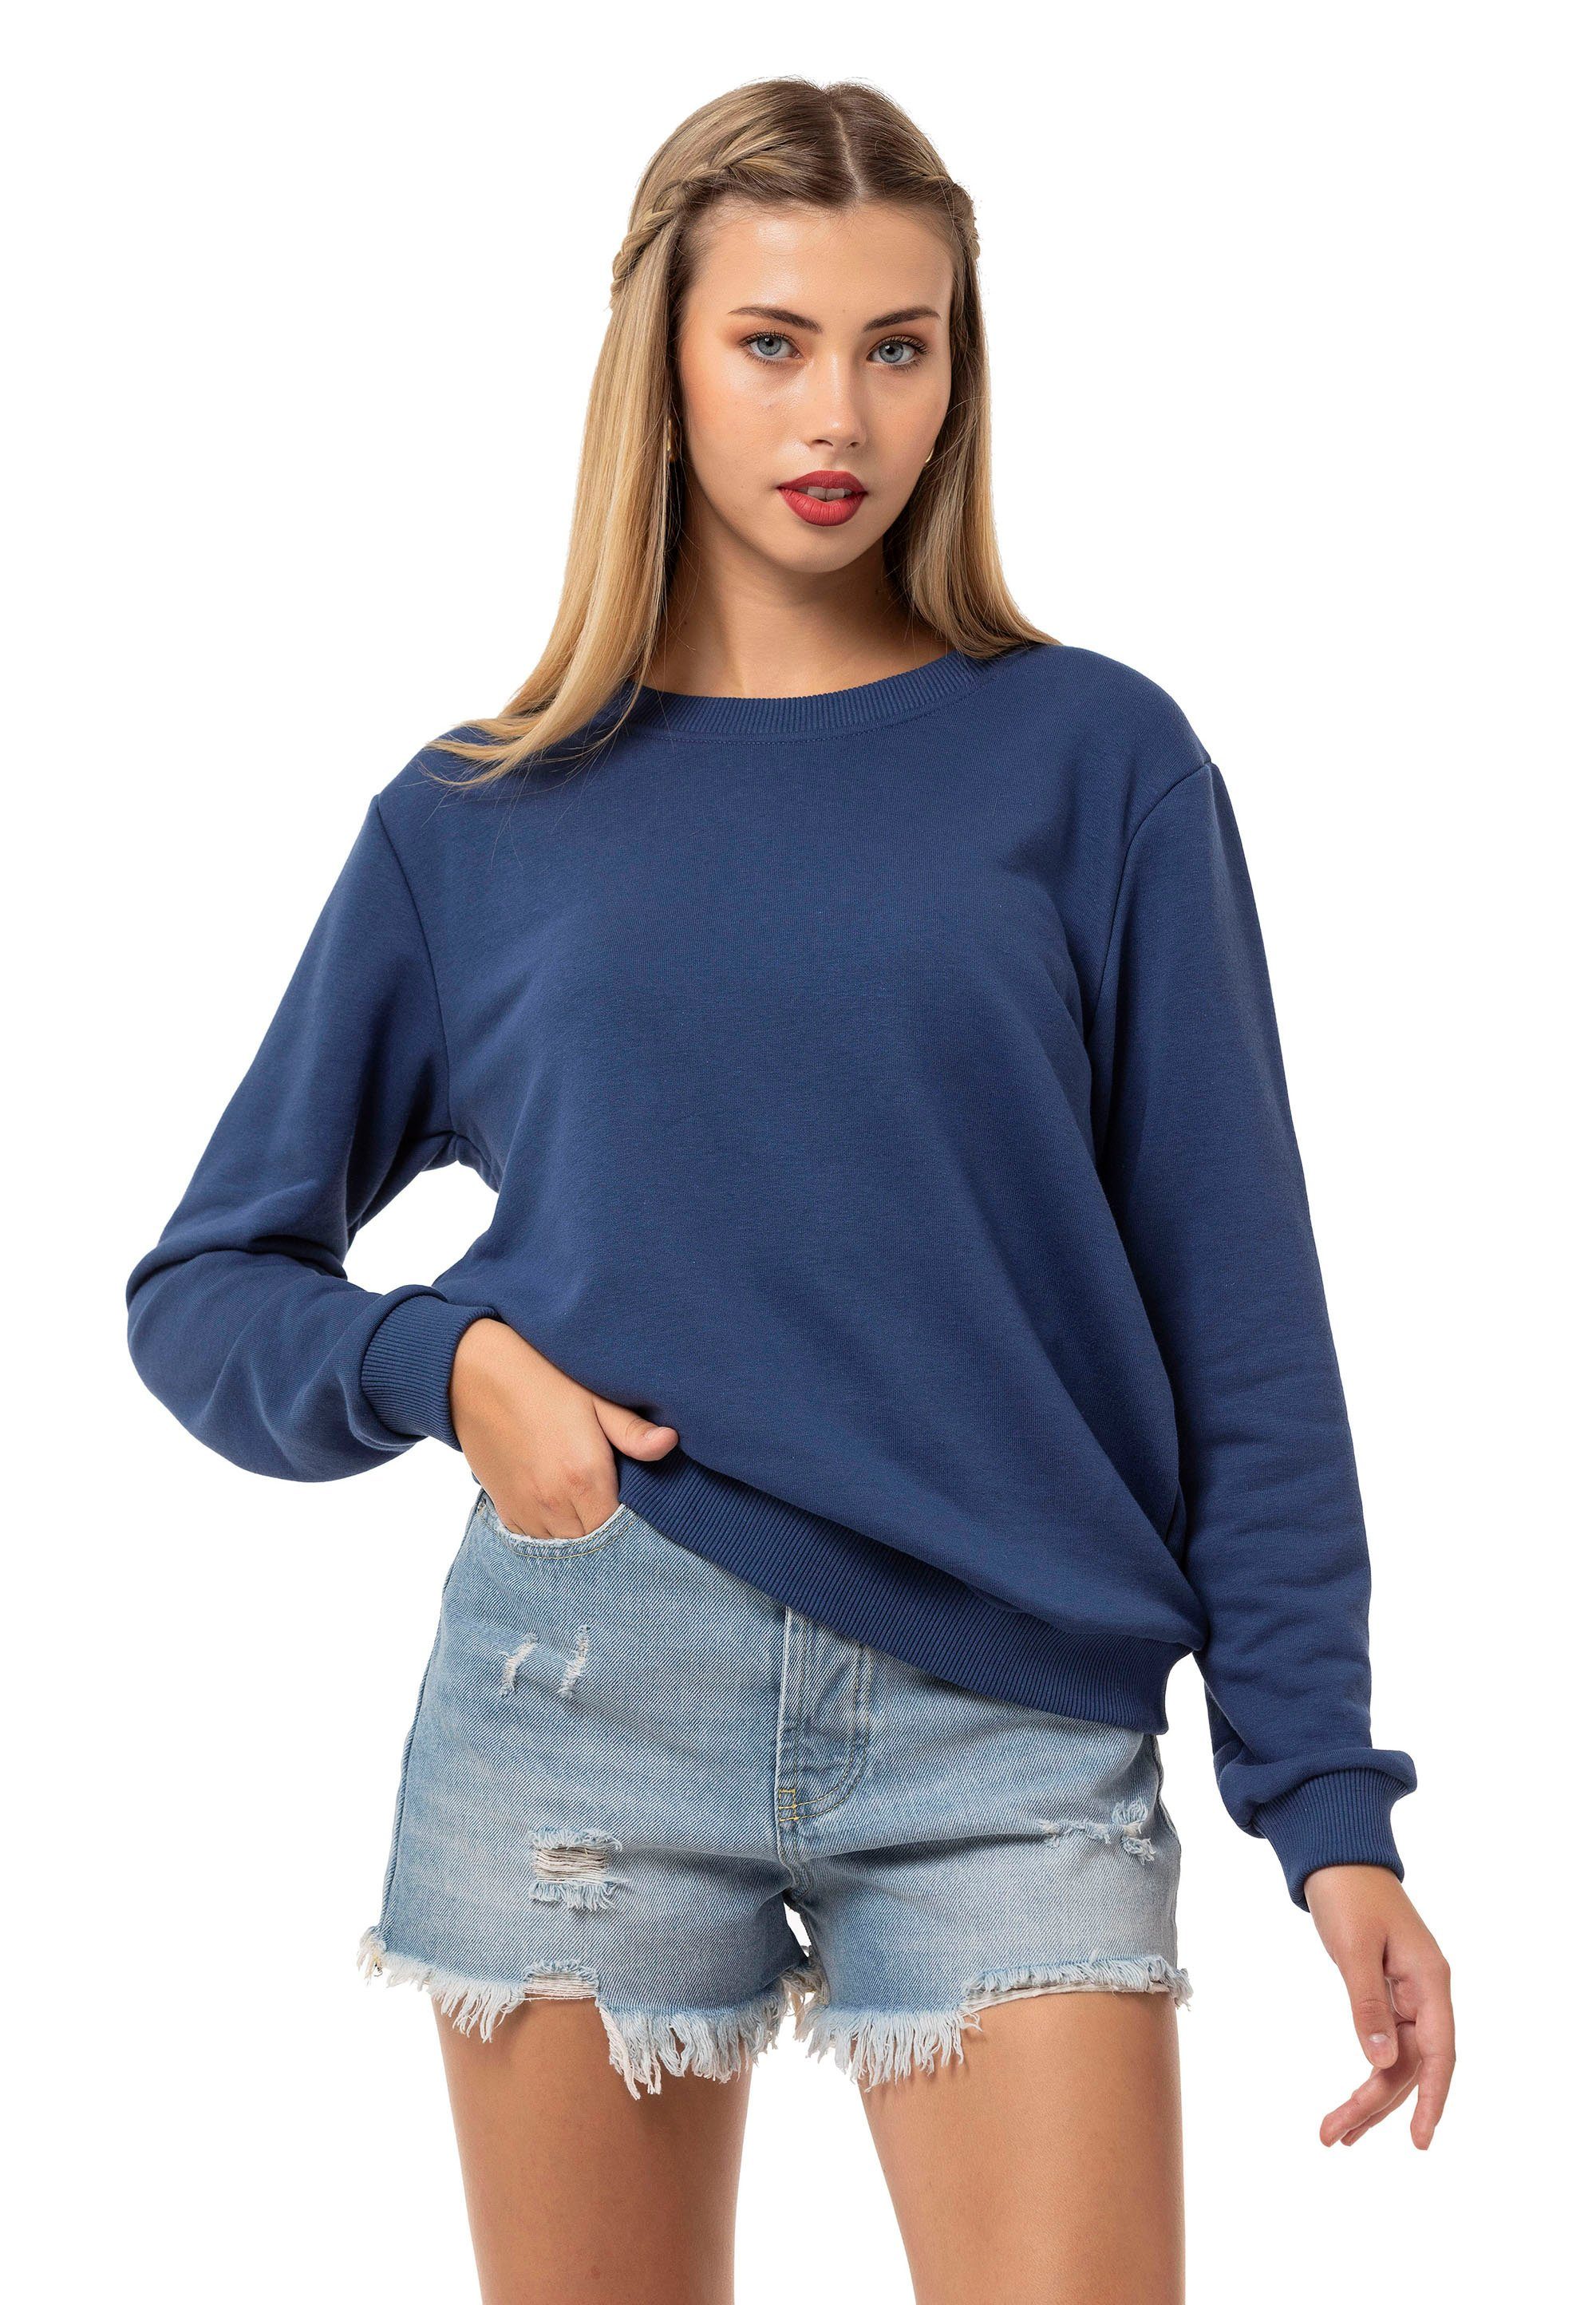 RedBridge Sweatshirt Premium Indigo Pullover Qualität Rundhals